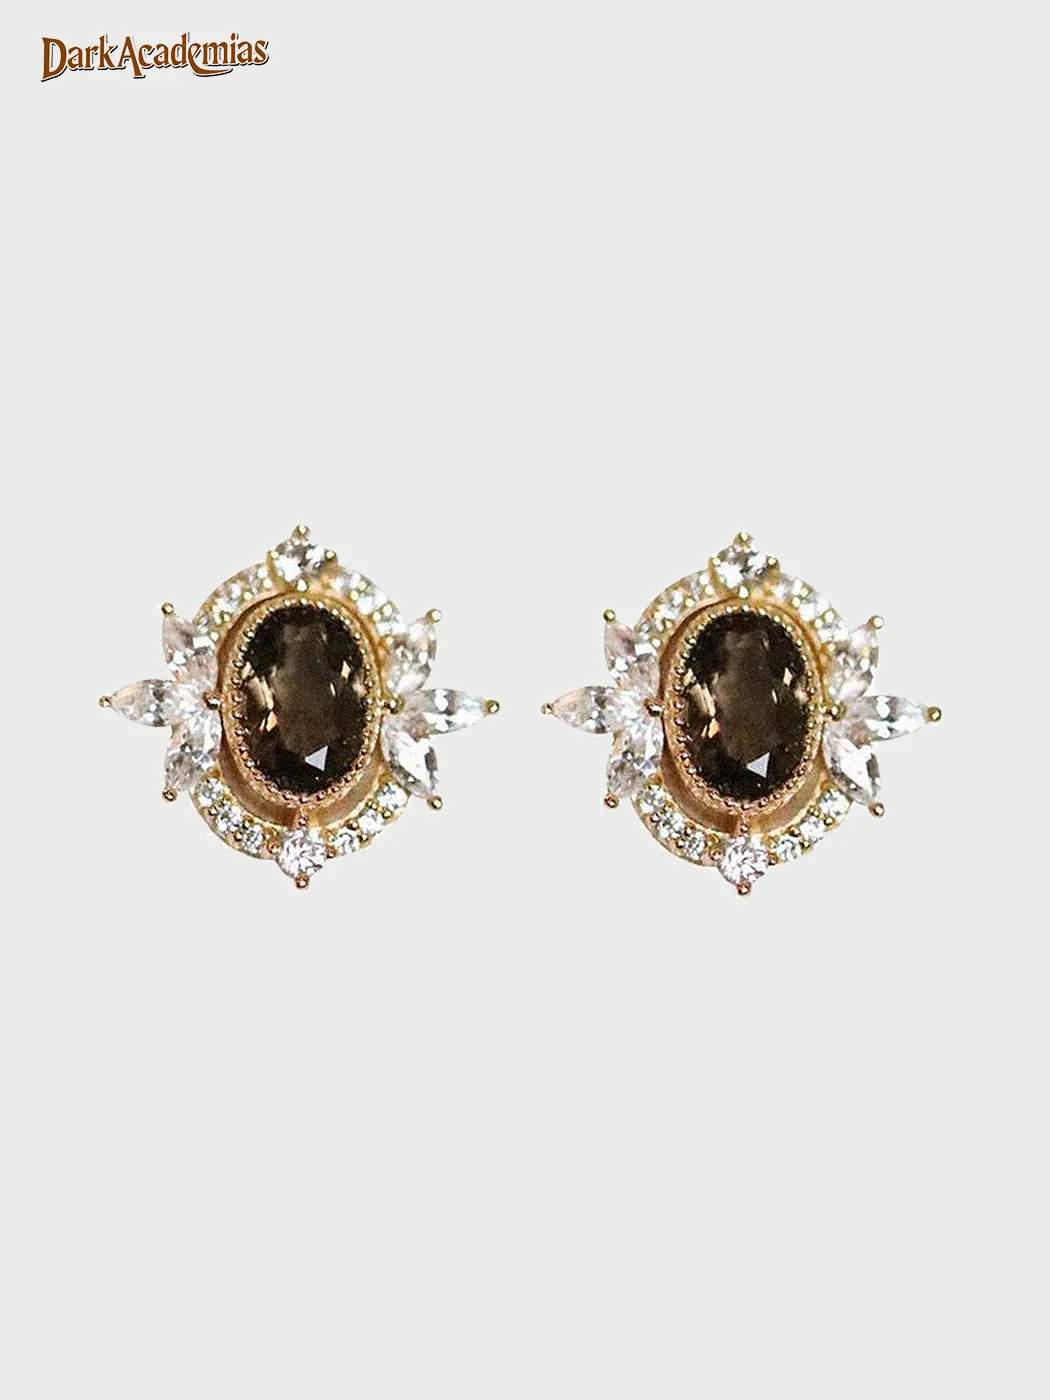 Vintage Gemstone Earrings / DarkAcademias /Darkacademias